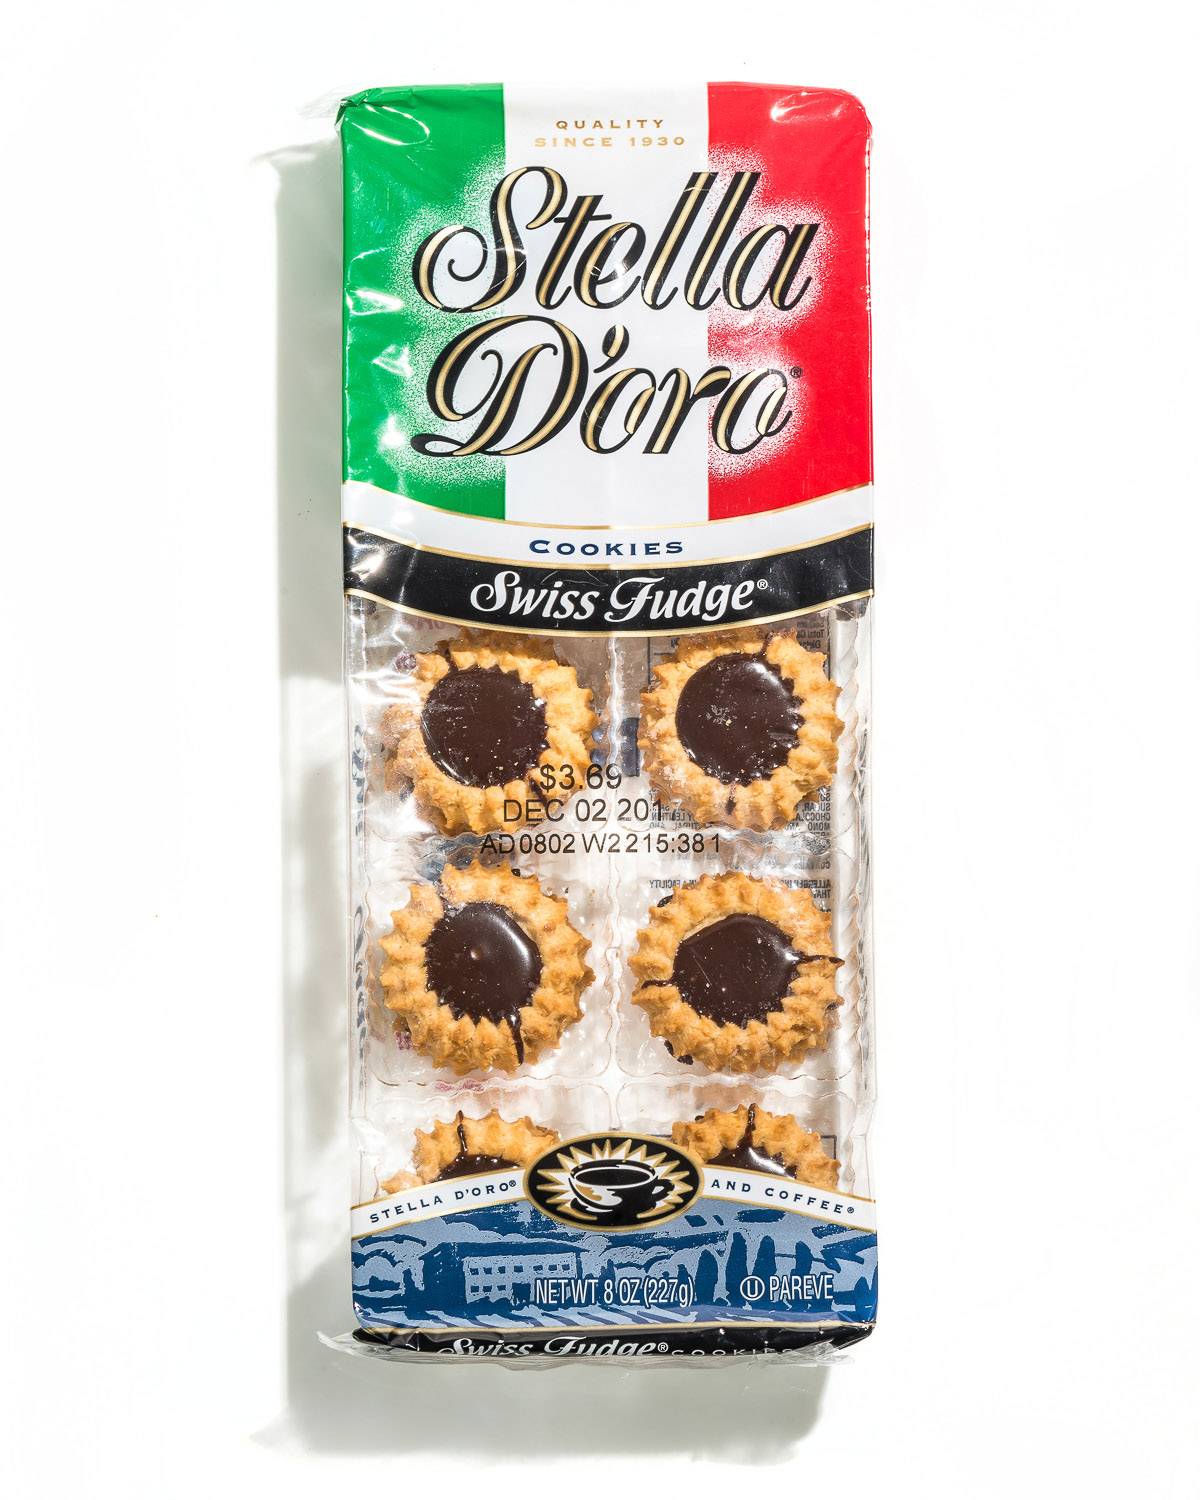 Stella D'Oro Swiss Fudge Cookies